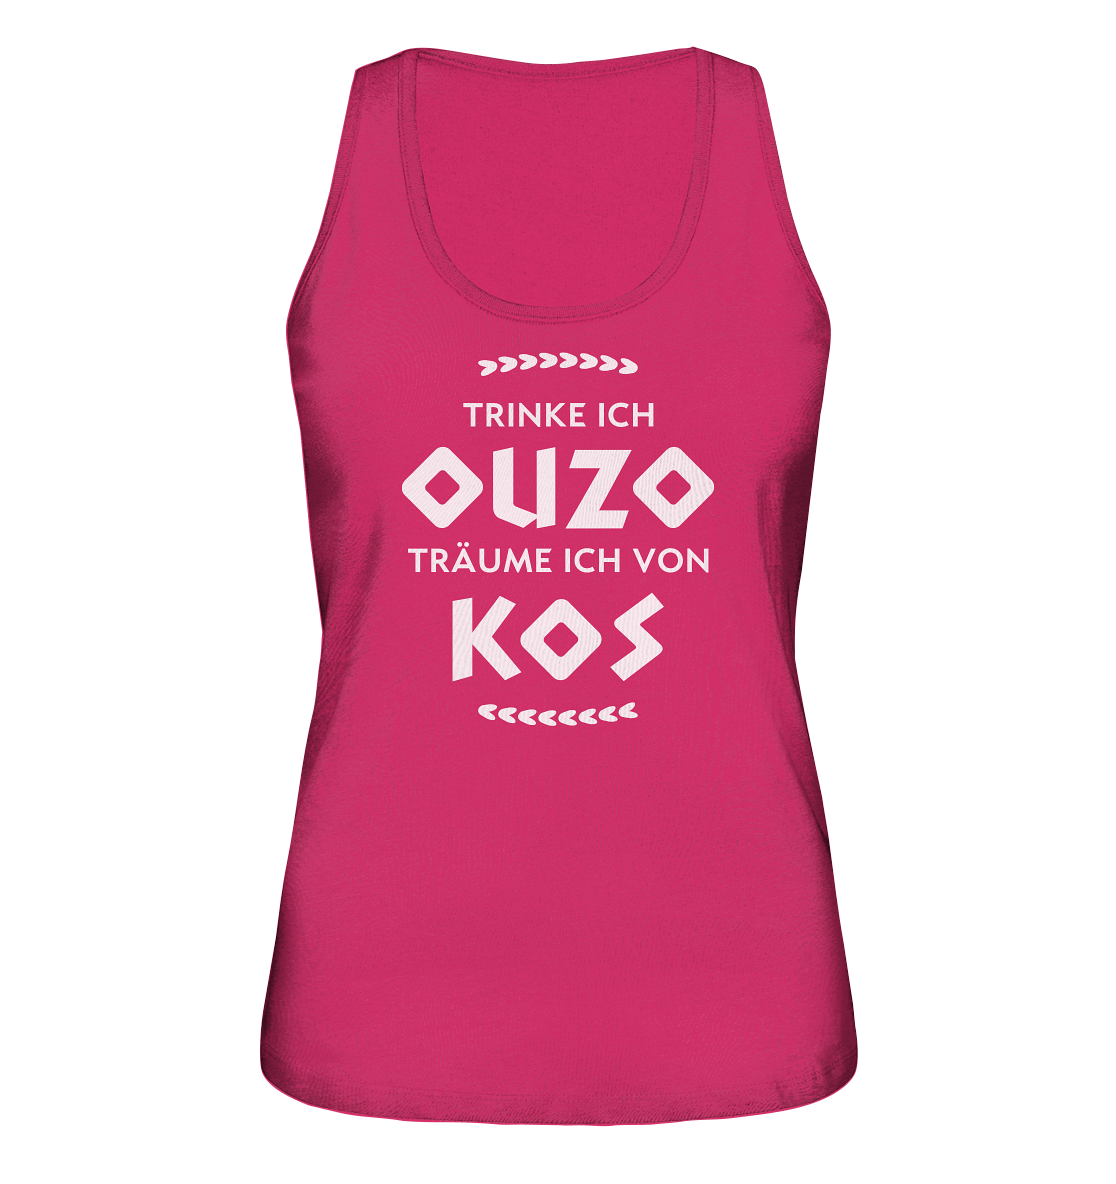 Trinke ich Ouzo träume ich von Kos - Ladies Organic Tank-Top